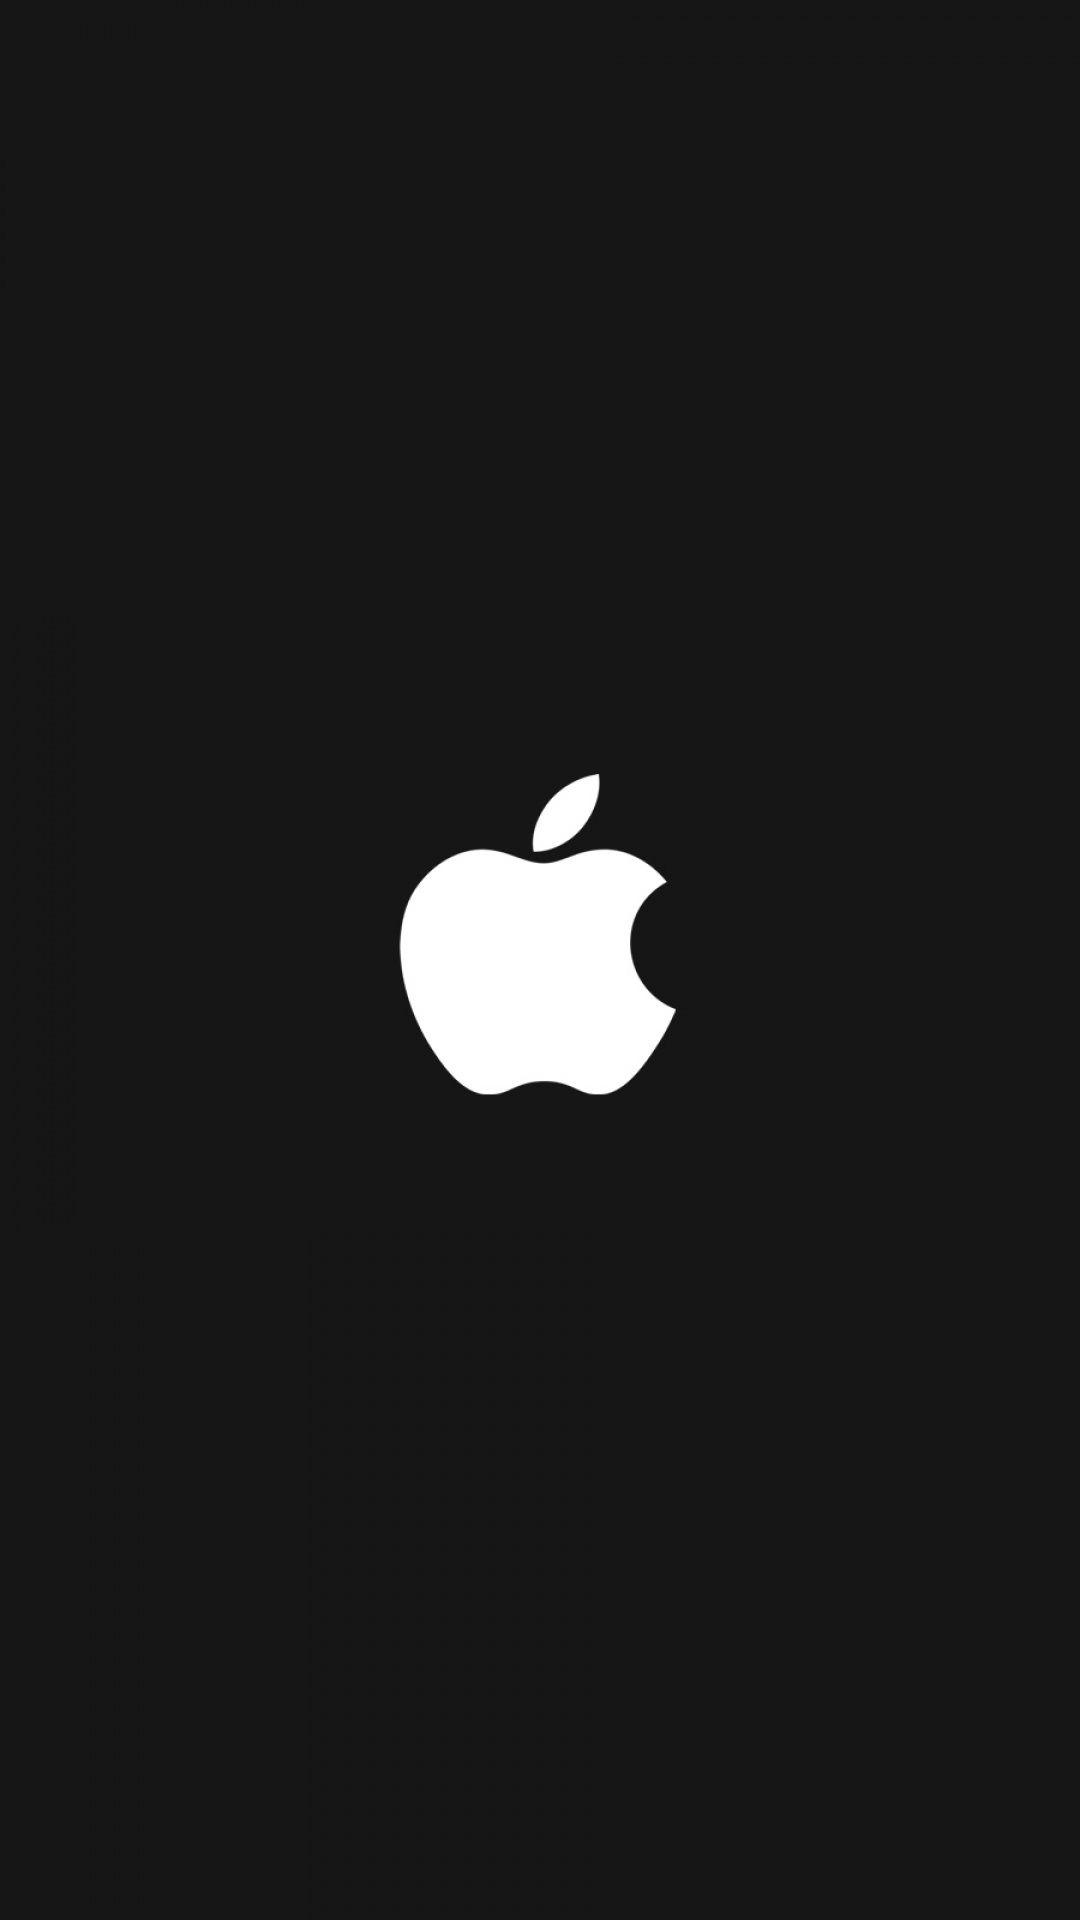 Apple Logo Iphone Wallpapers - Top Những Hình Ảnh Đẹp